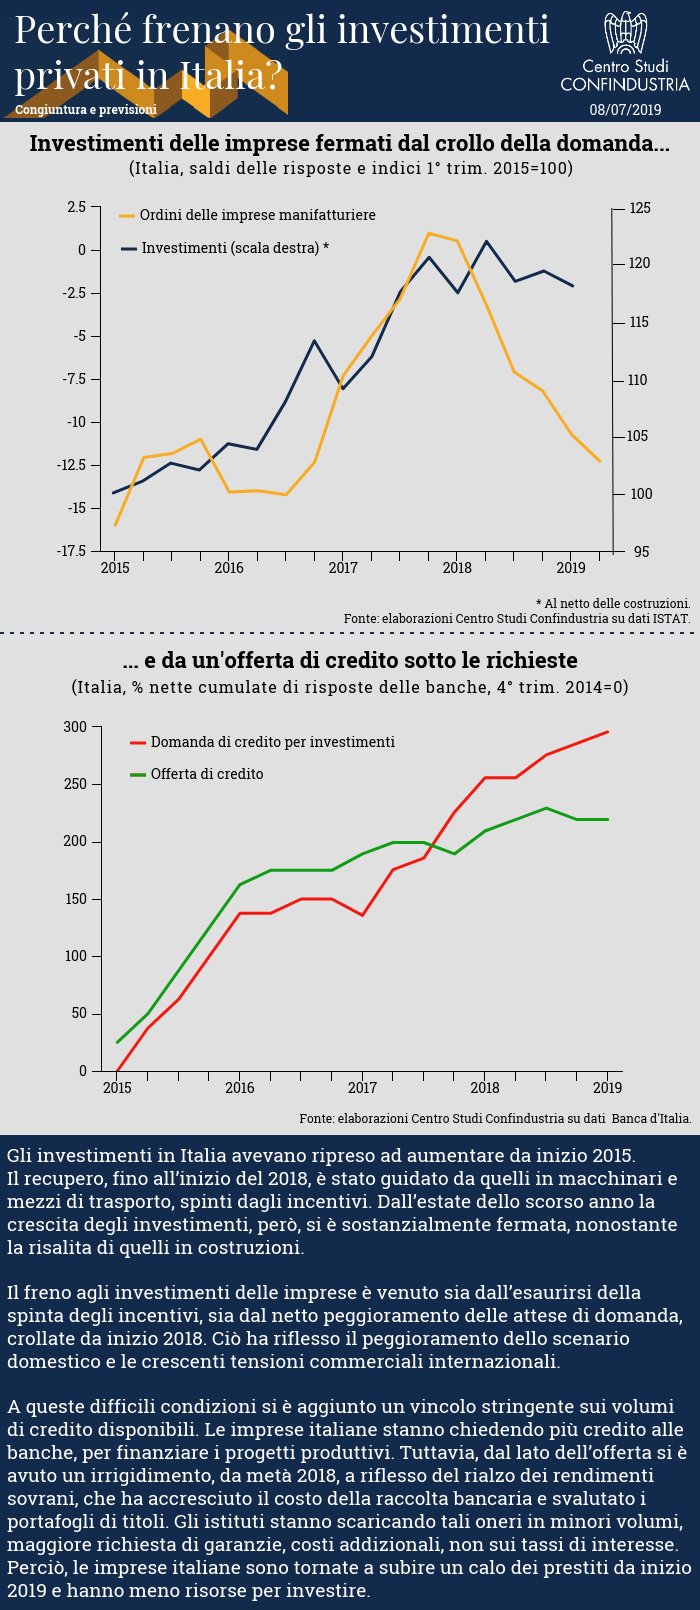 Infografica CSC - Perché frenano gli investimenti privati in Italia, crollo domanda imprese manifatturiere e offerta di credito sotto le richieste